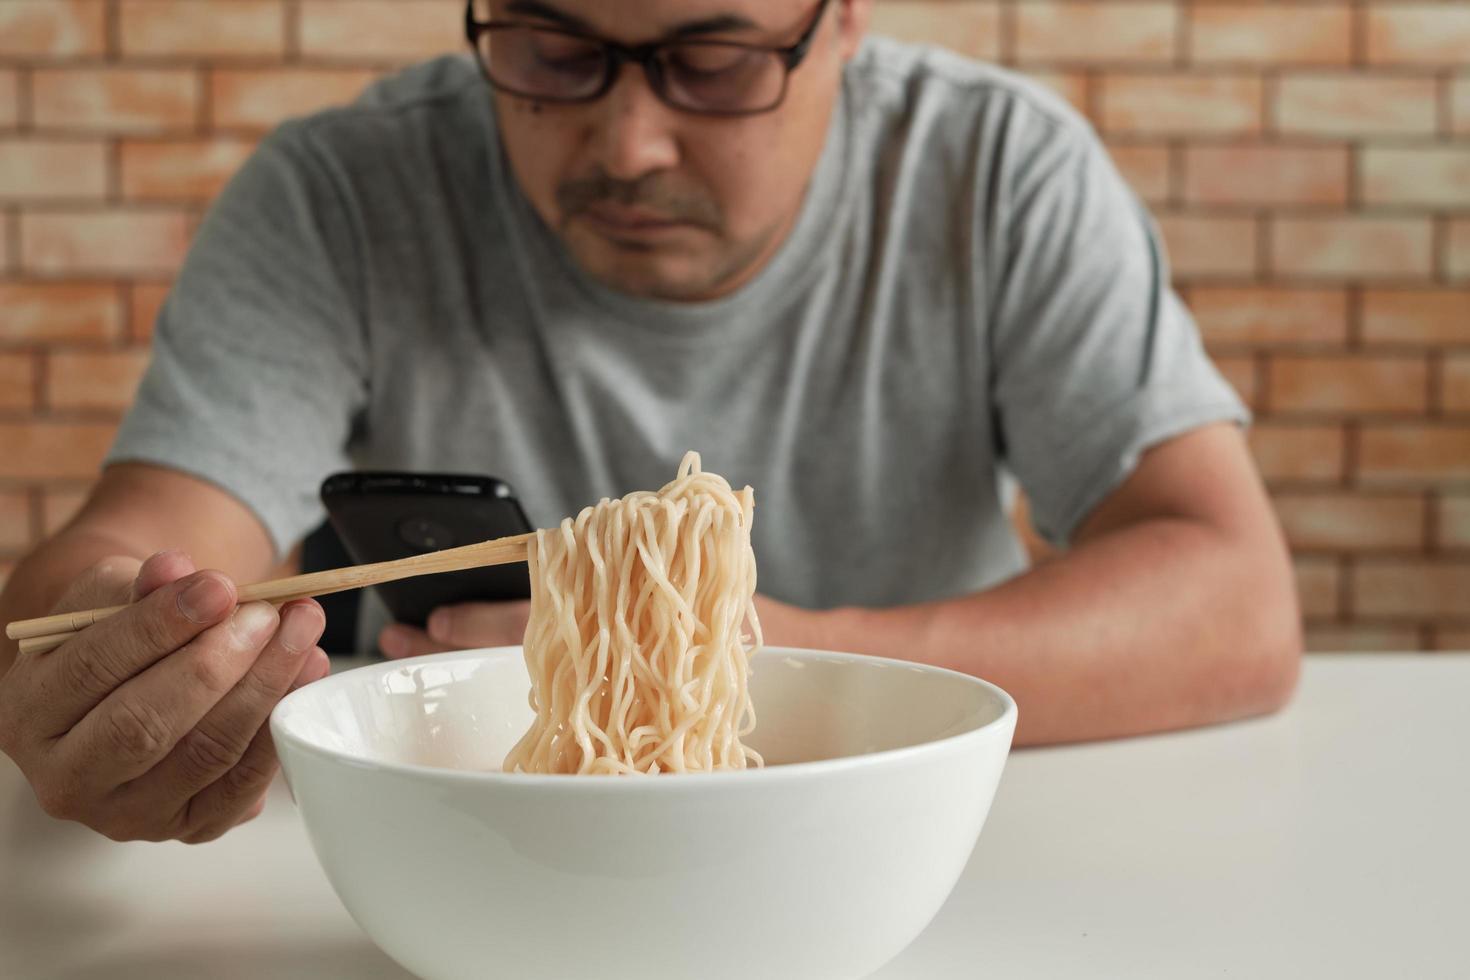 Un hombre asiático casual en el fondo de la pared de ladrillo leyendo un teléfono móvil usa palillos para comer fideos instantáneos calientes en una taza blanca durante la hora del almuerzo. estilo de vida de cocina tradicional asiática de comida rápida. foto